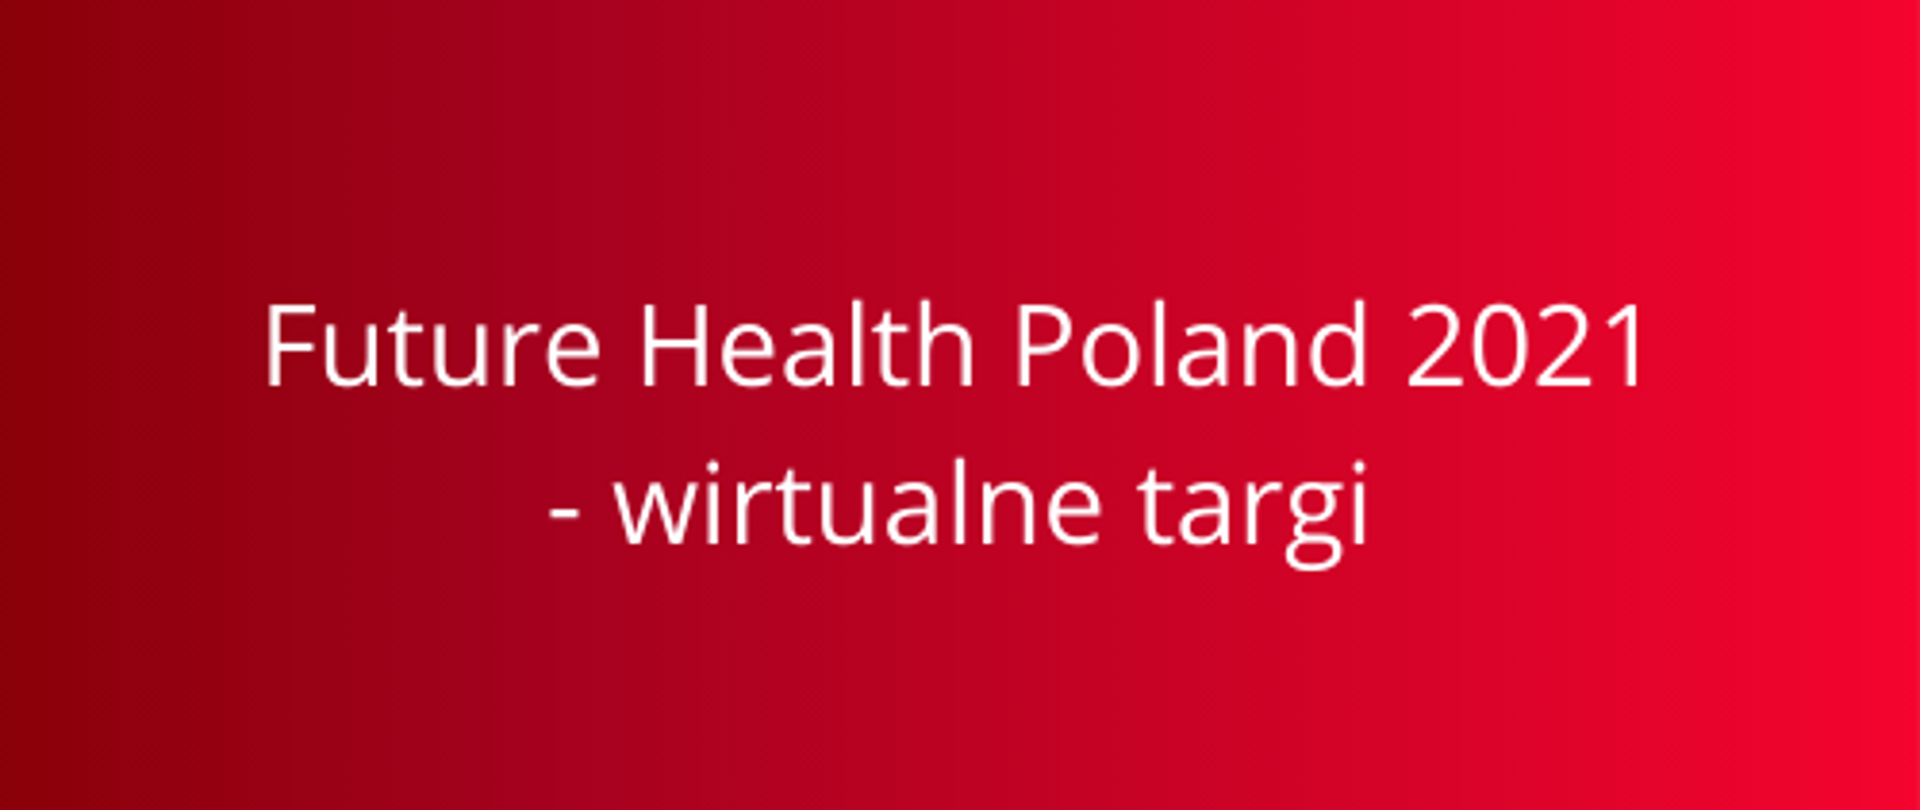 Future Health Poland 2021